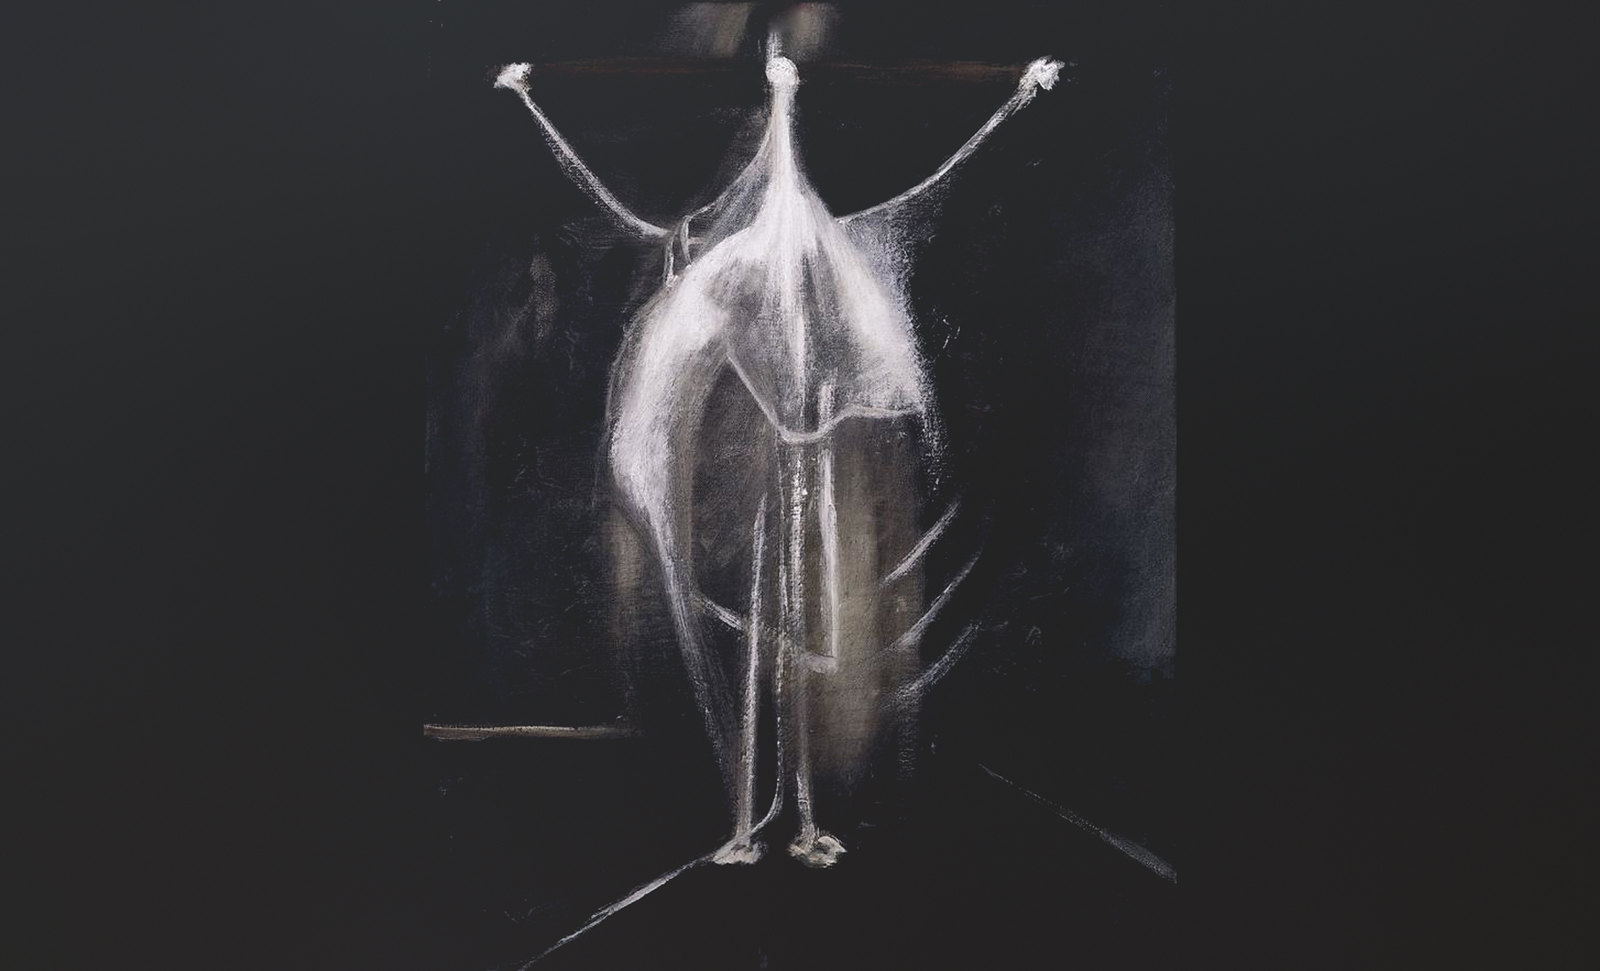 Danzando, pronóstico de Pablo Picasso (1956), encuadre de Francis Bacon (1933).